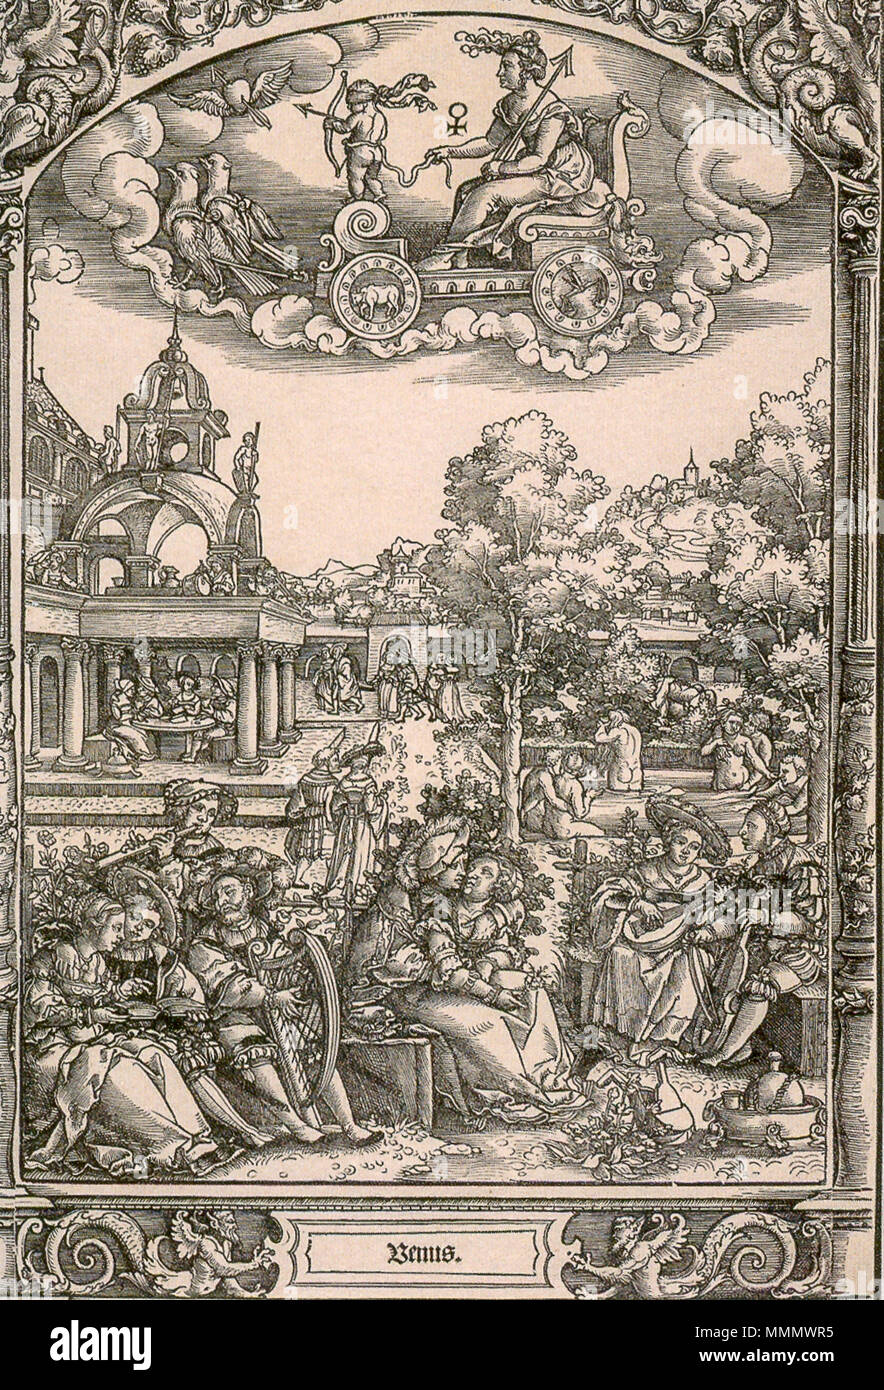 . Deutsch: Venere Die sieben Planeten. 1531. Beham oder Pencz-Die sieben Planeten-Venus-Sonn-1531-2 Foto Stock